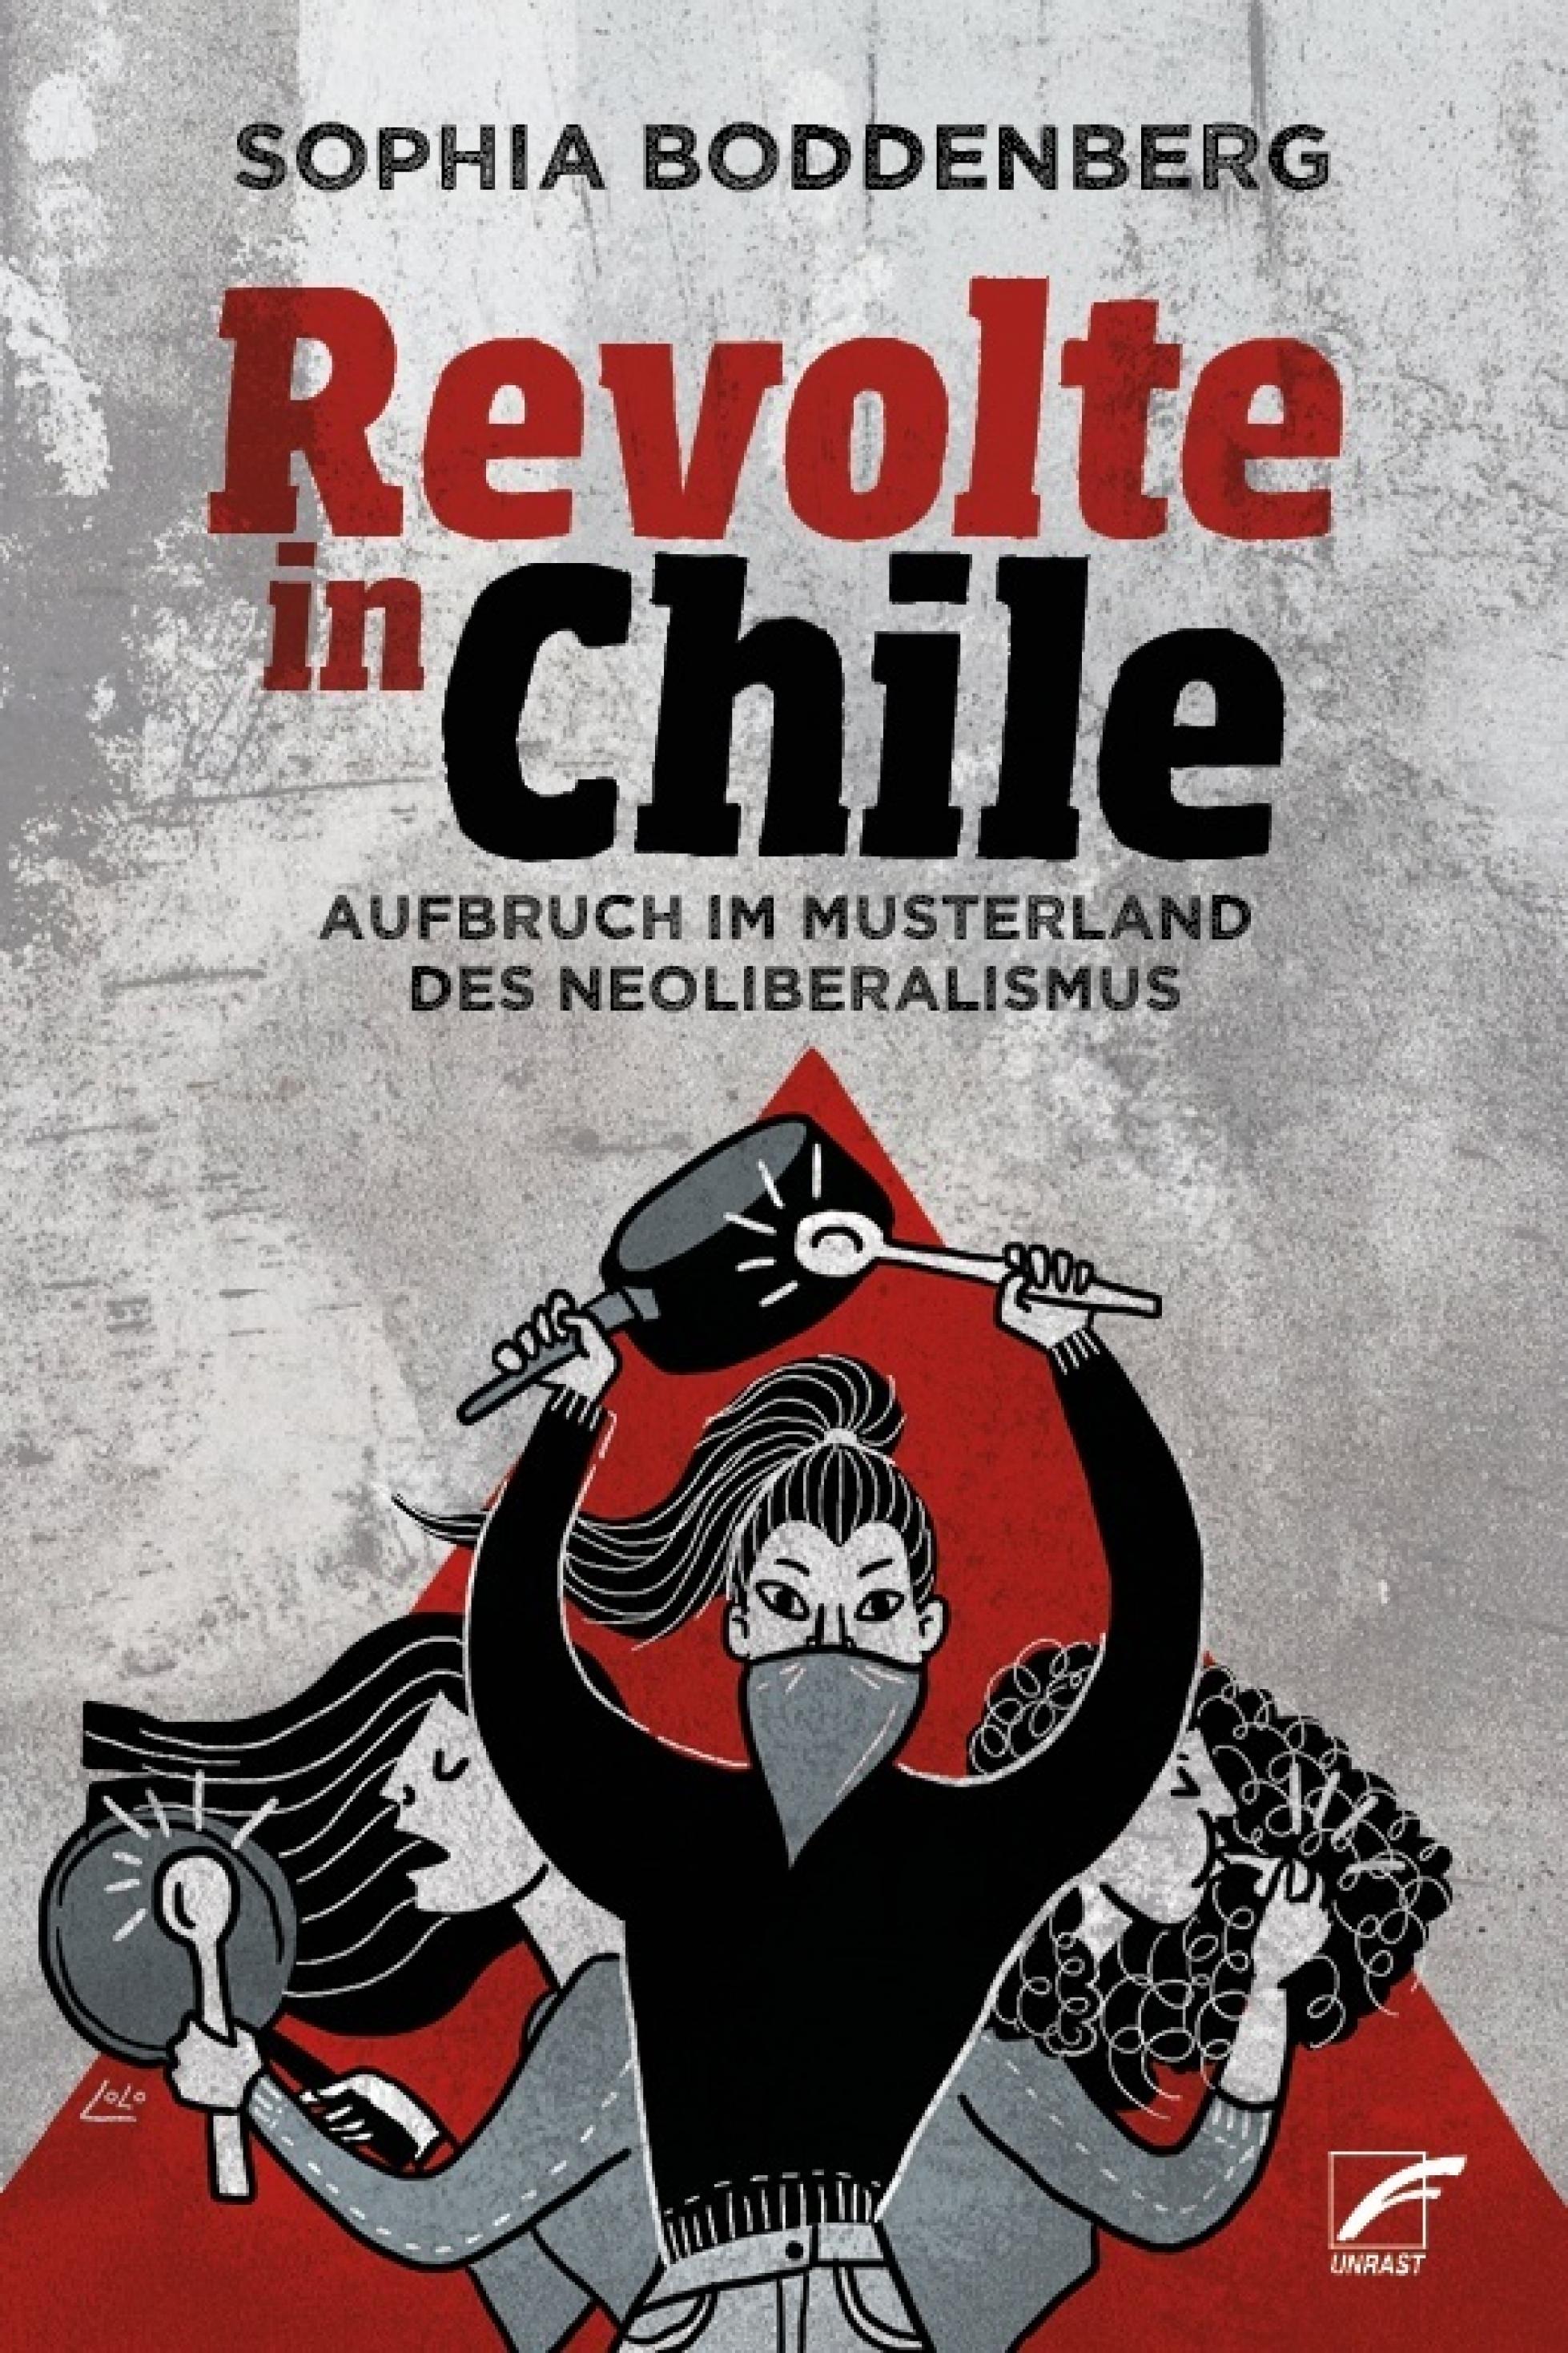 Ein Buchcover mit der Überschrift „Revolte in Chile“ ist auf grauem Grund zu sehen. Unter der Schrift sind drei illustrierte Frauen, die Lärm mit Kochtöpfen und Trillerpfeifen machen.